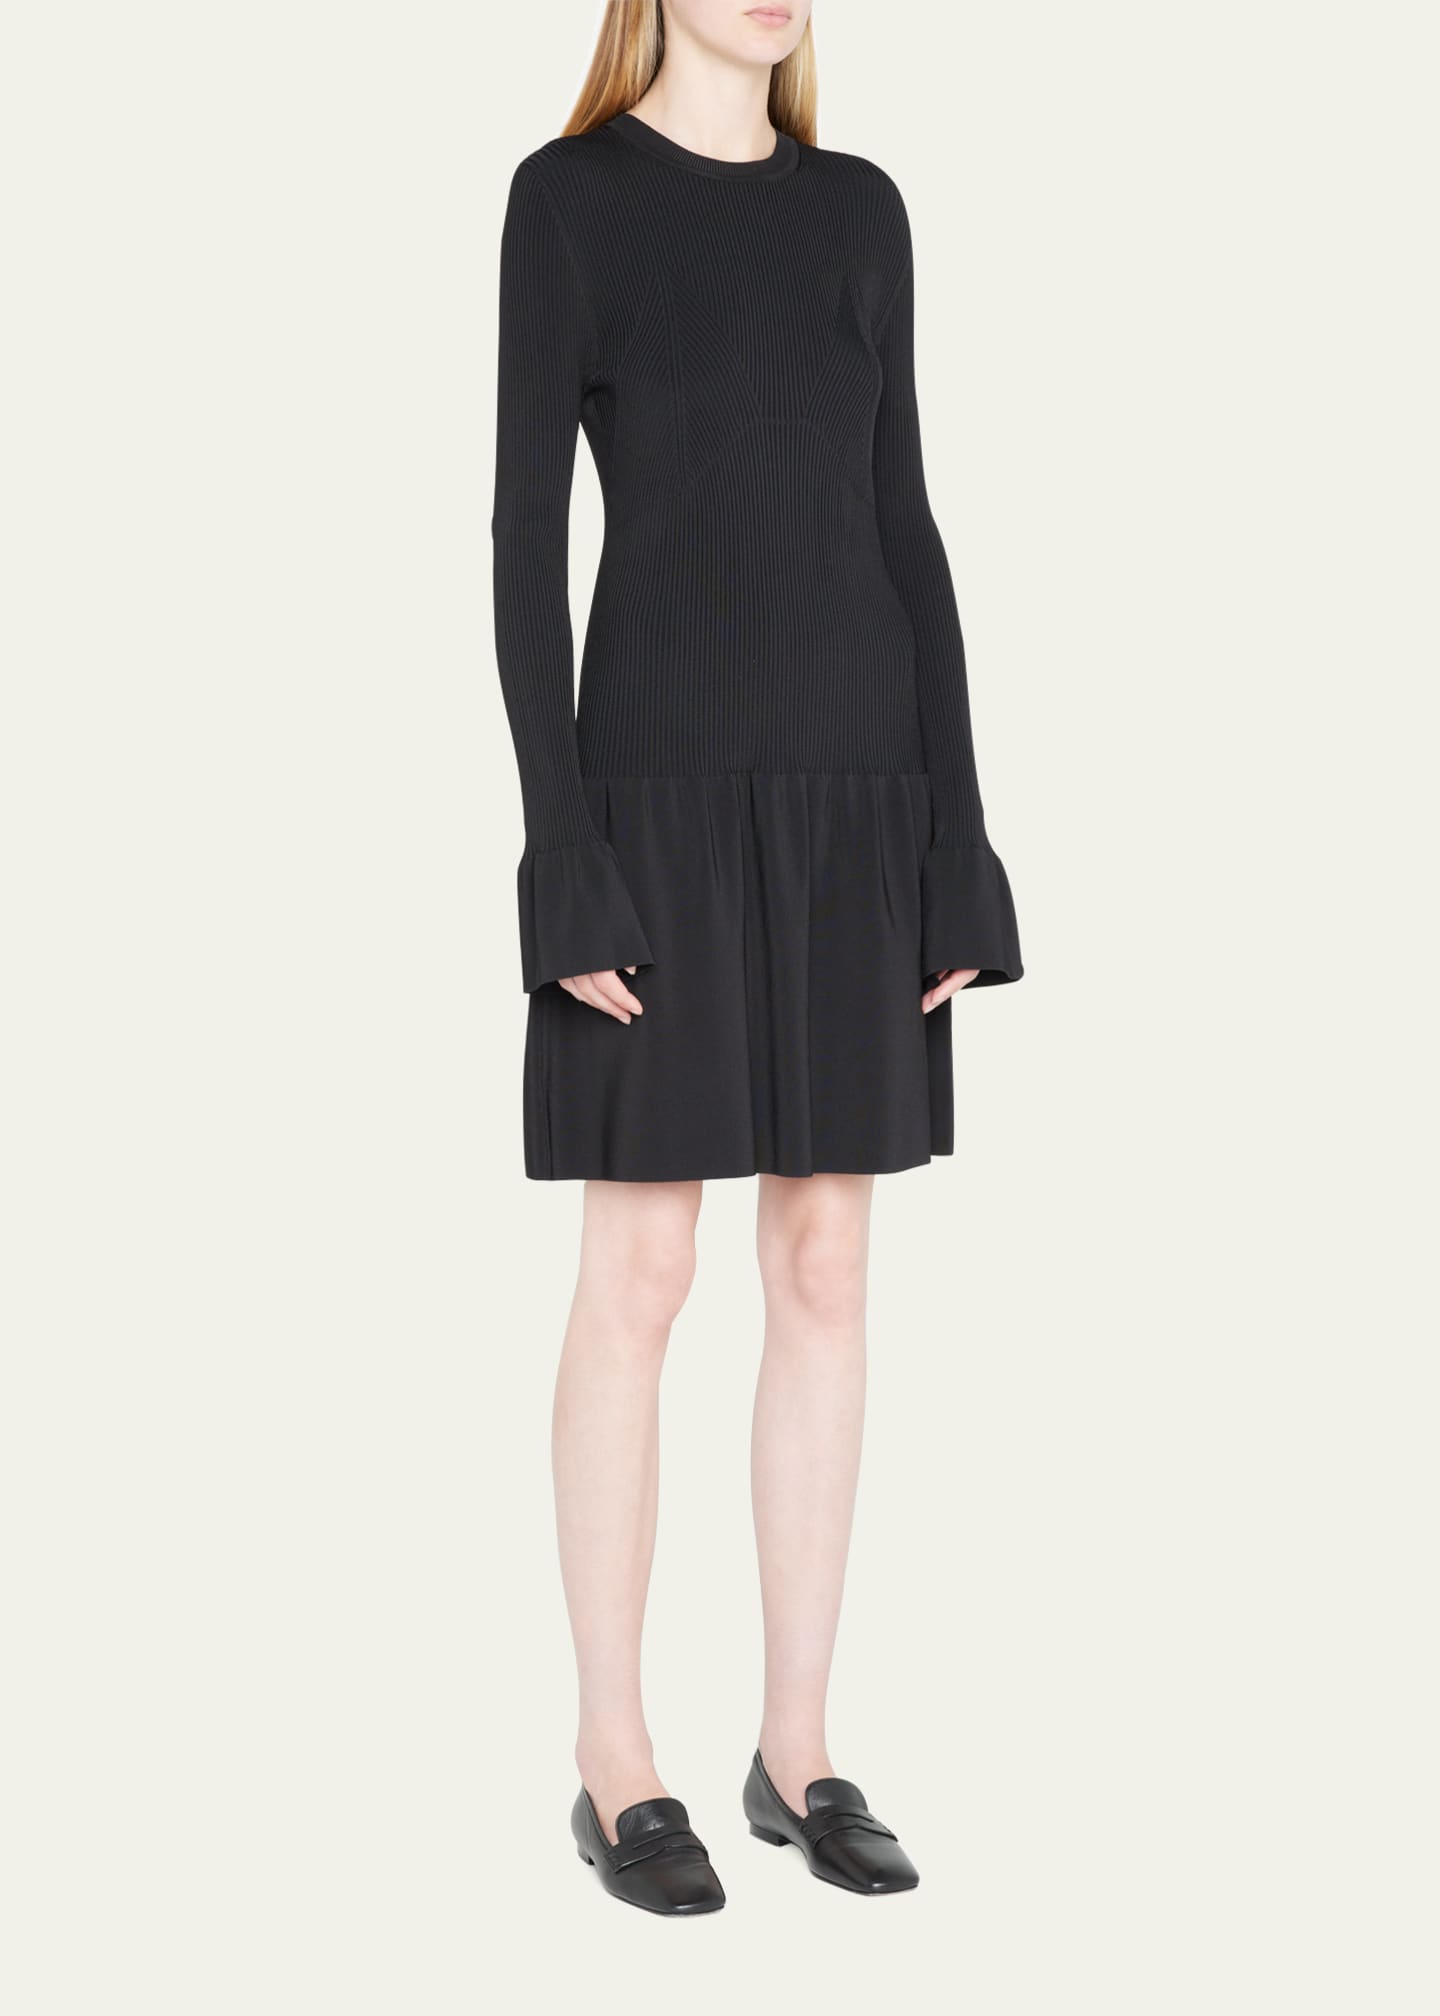 Tanya Taylor Roxanne Bell-Cuff Mini Knit Dress - Bergdorf Goodman